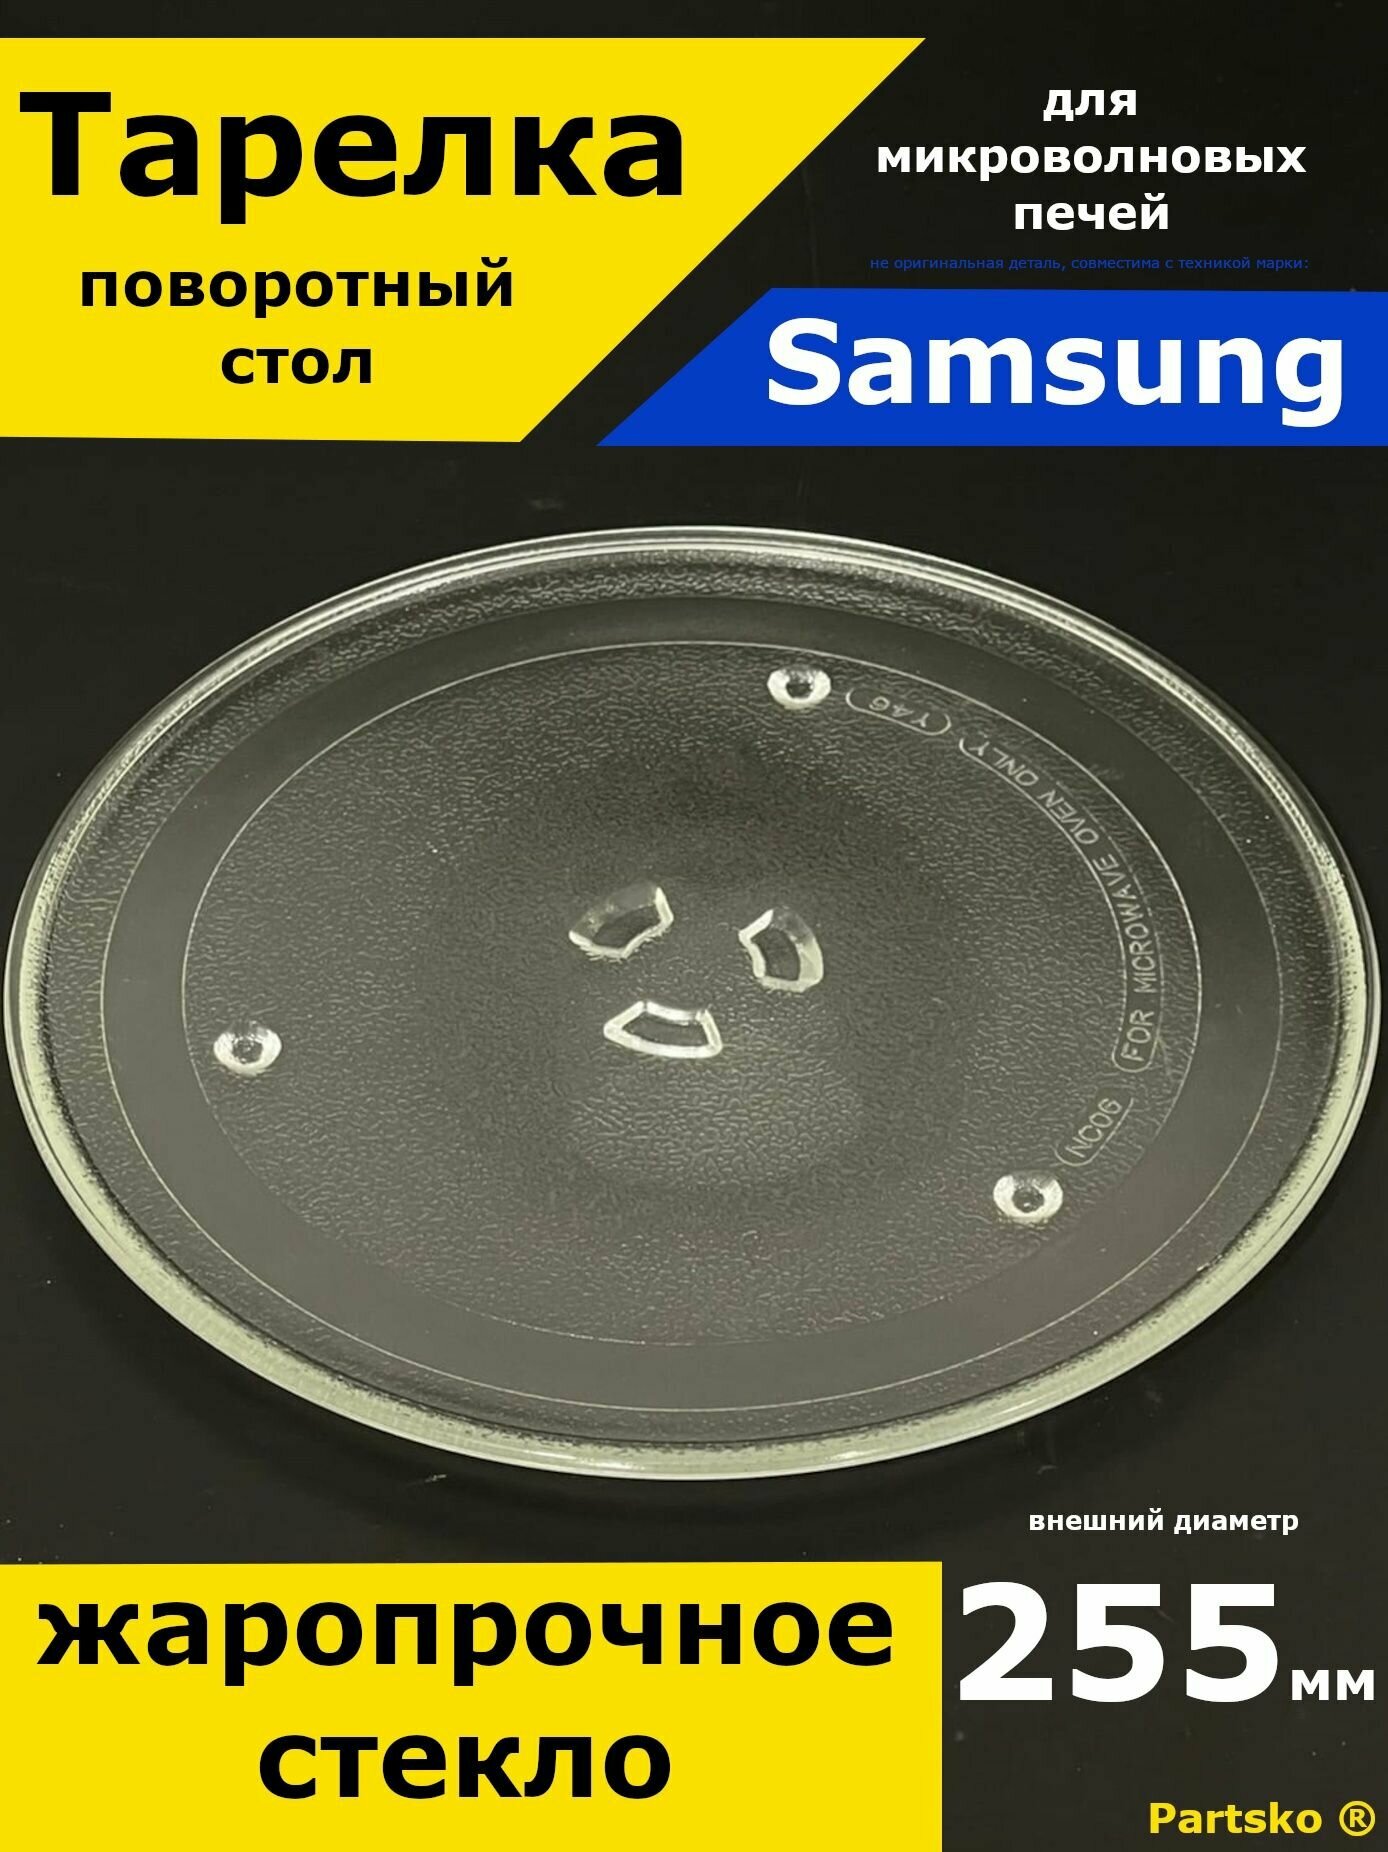 Тарелка для микроволновки Samsung Самсунг 255 мм. Стеклянная круглая для вращения поддона.